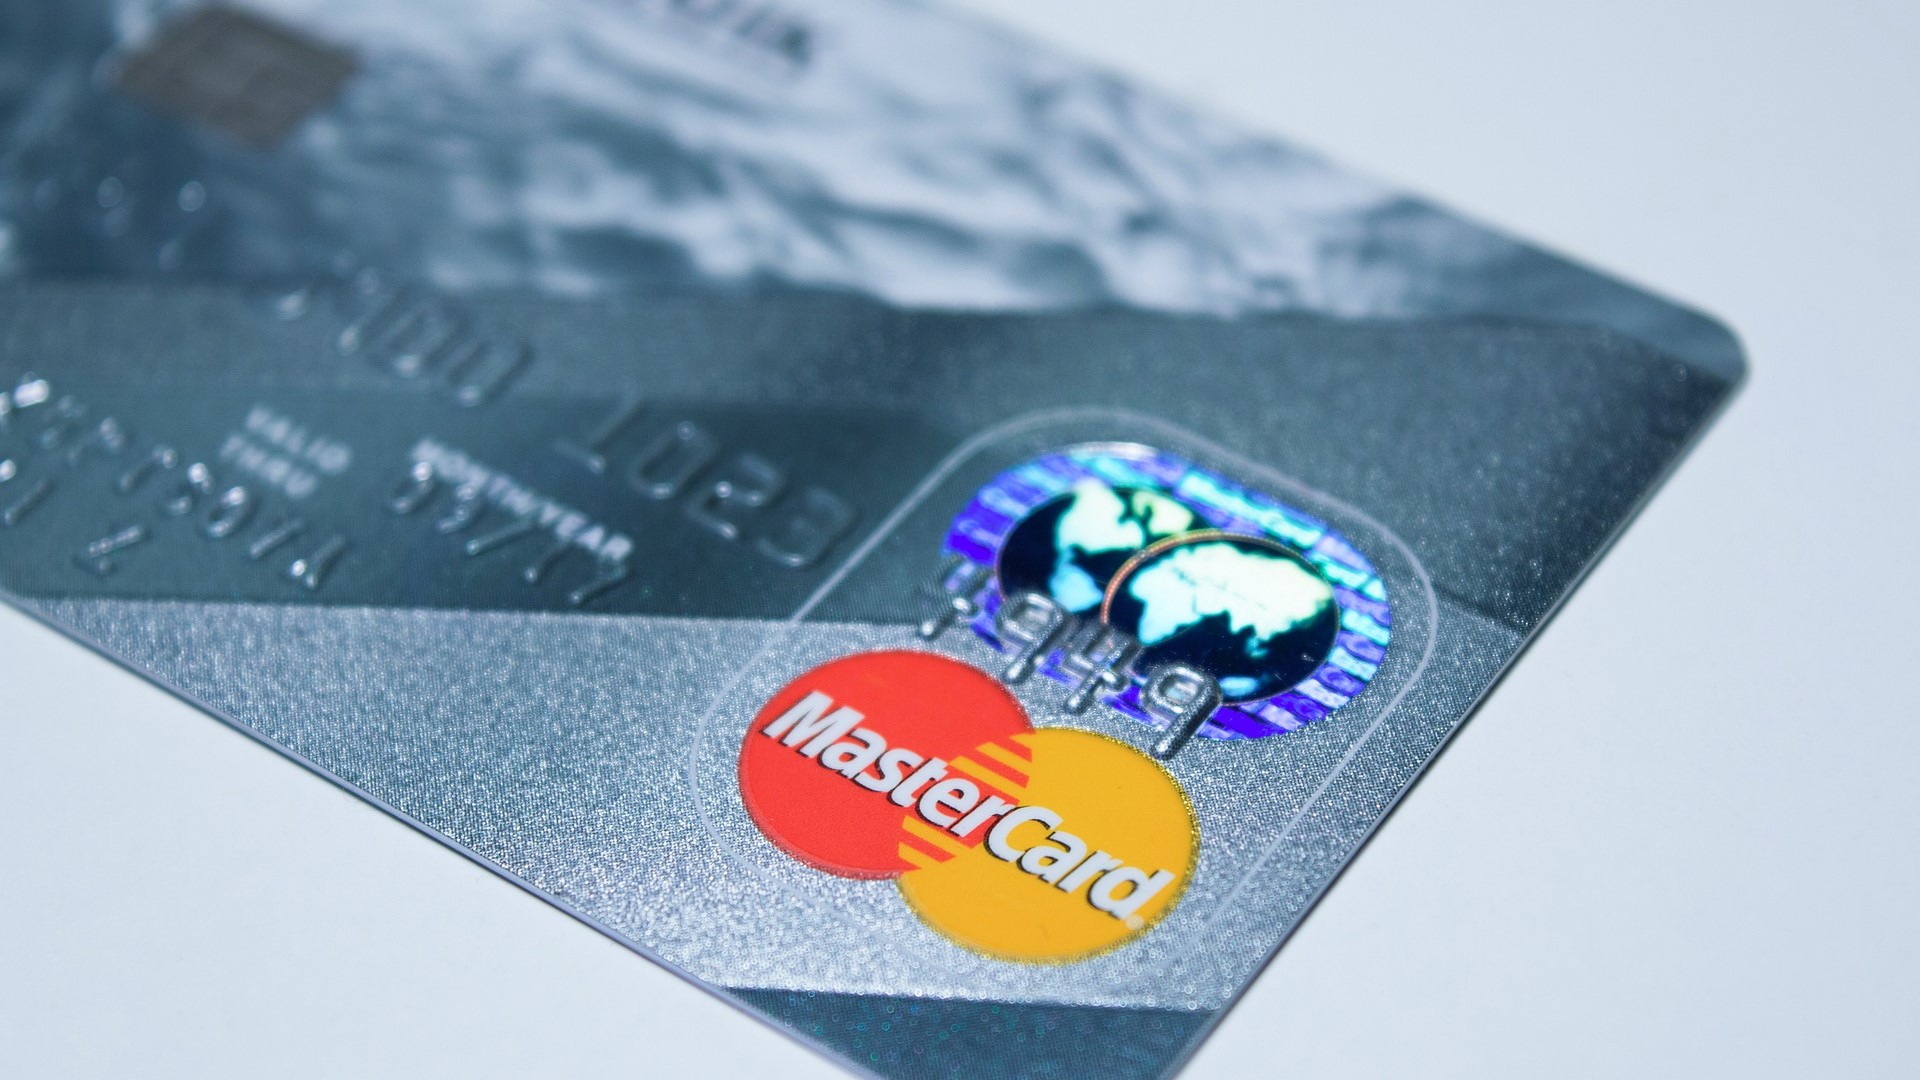 Mastercard กำลังพัฒนาให้การซื้อคริปโทฯ ปลอดภัยยิ่งขึ้นด้วยเครื่องมือประเมินความเสี่ยง